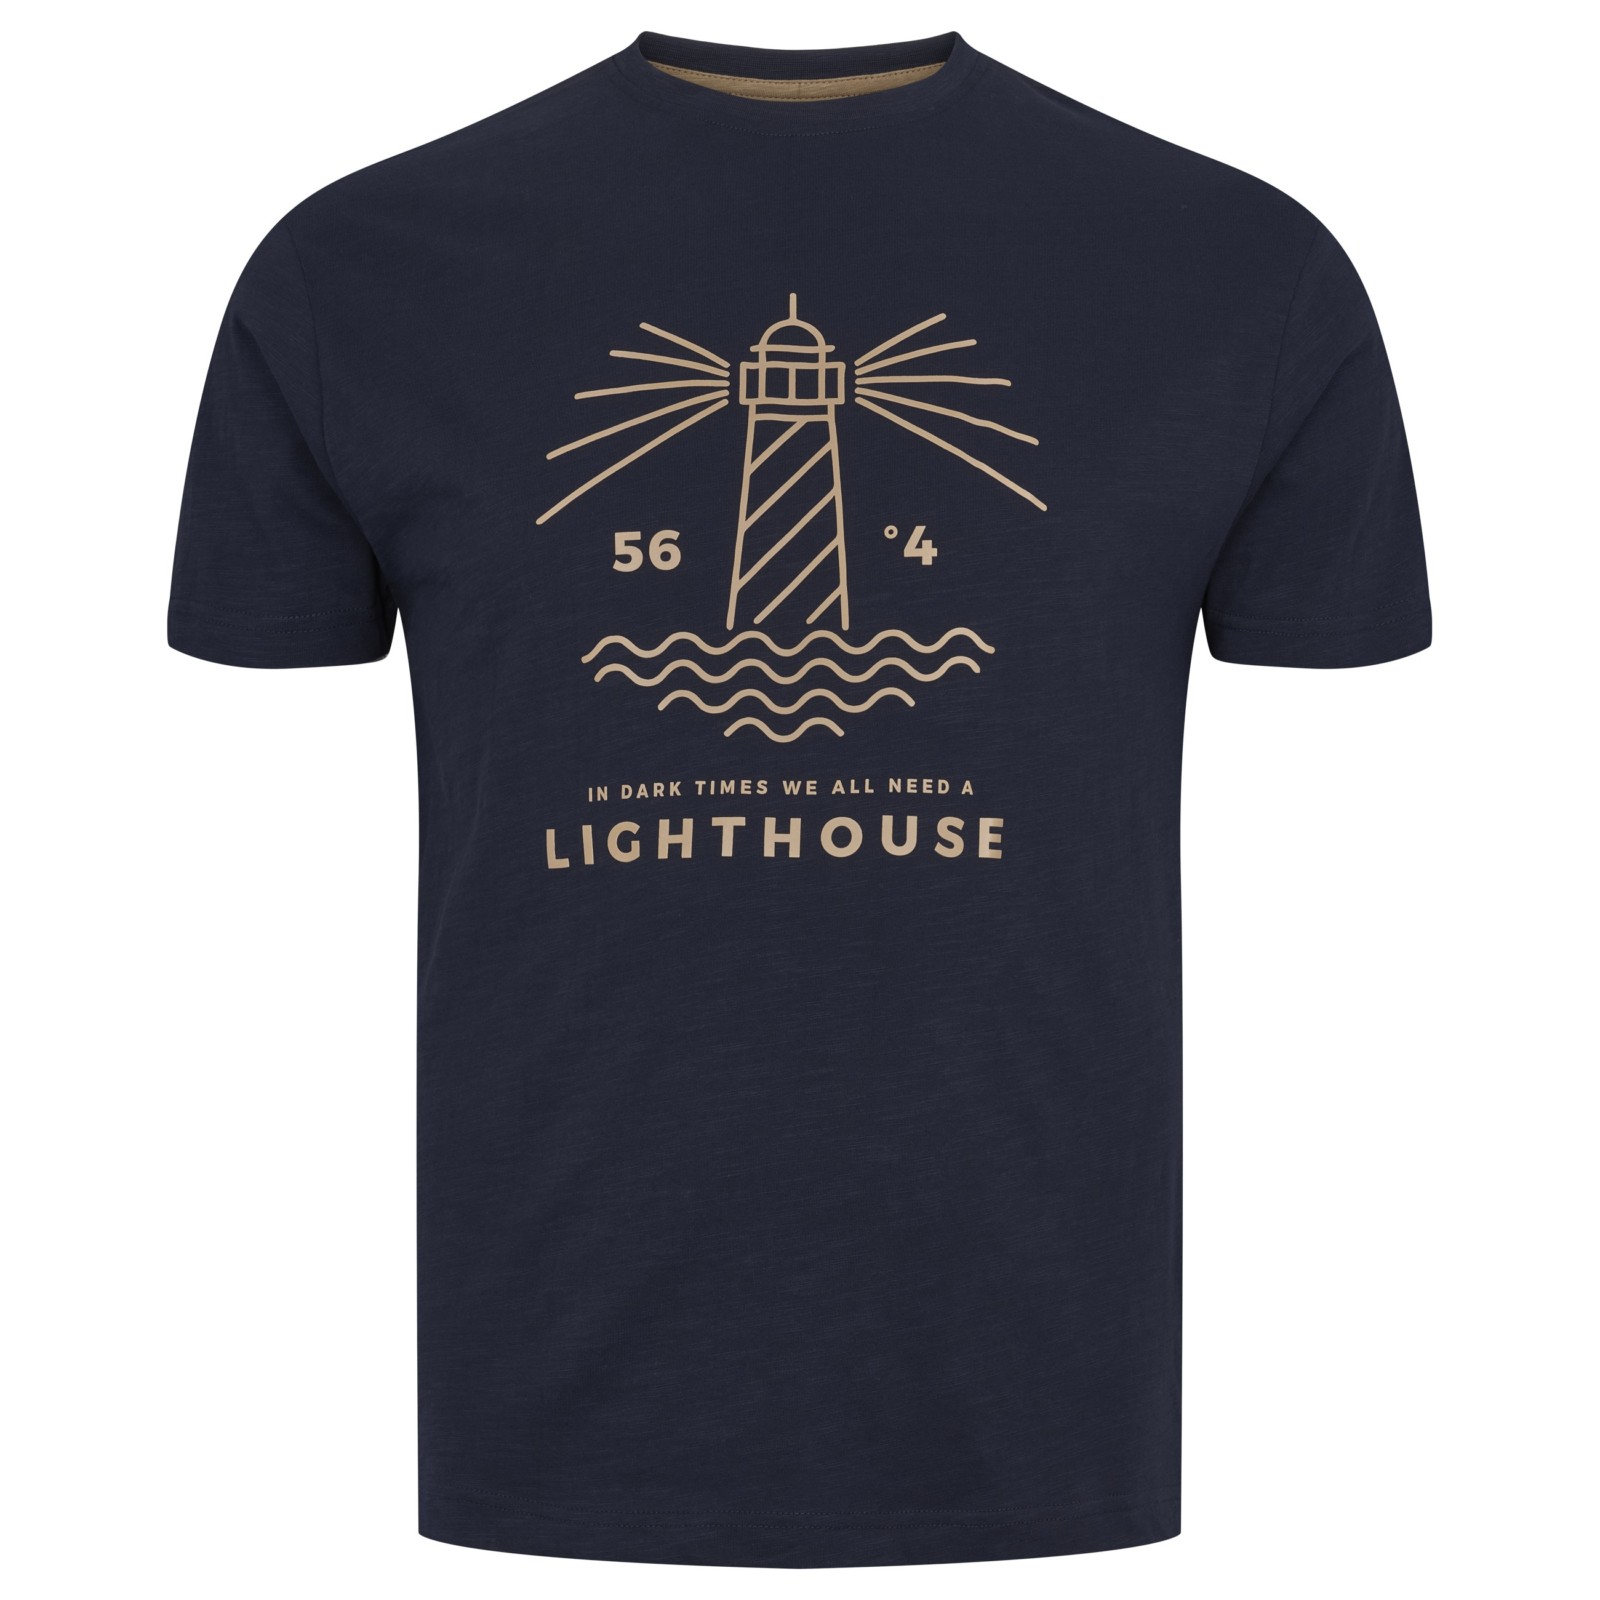 All-size_ACG_lighthouse-tee_tummasininen_31156_B-0580-Navy